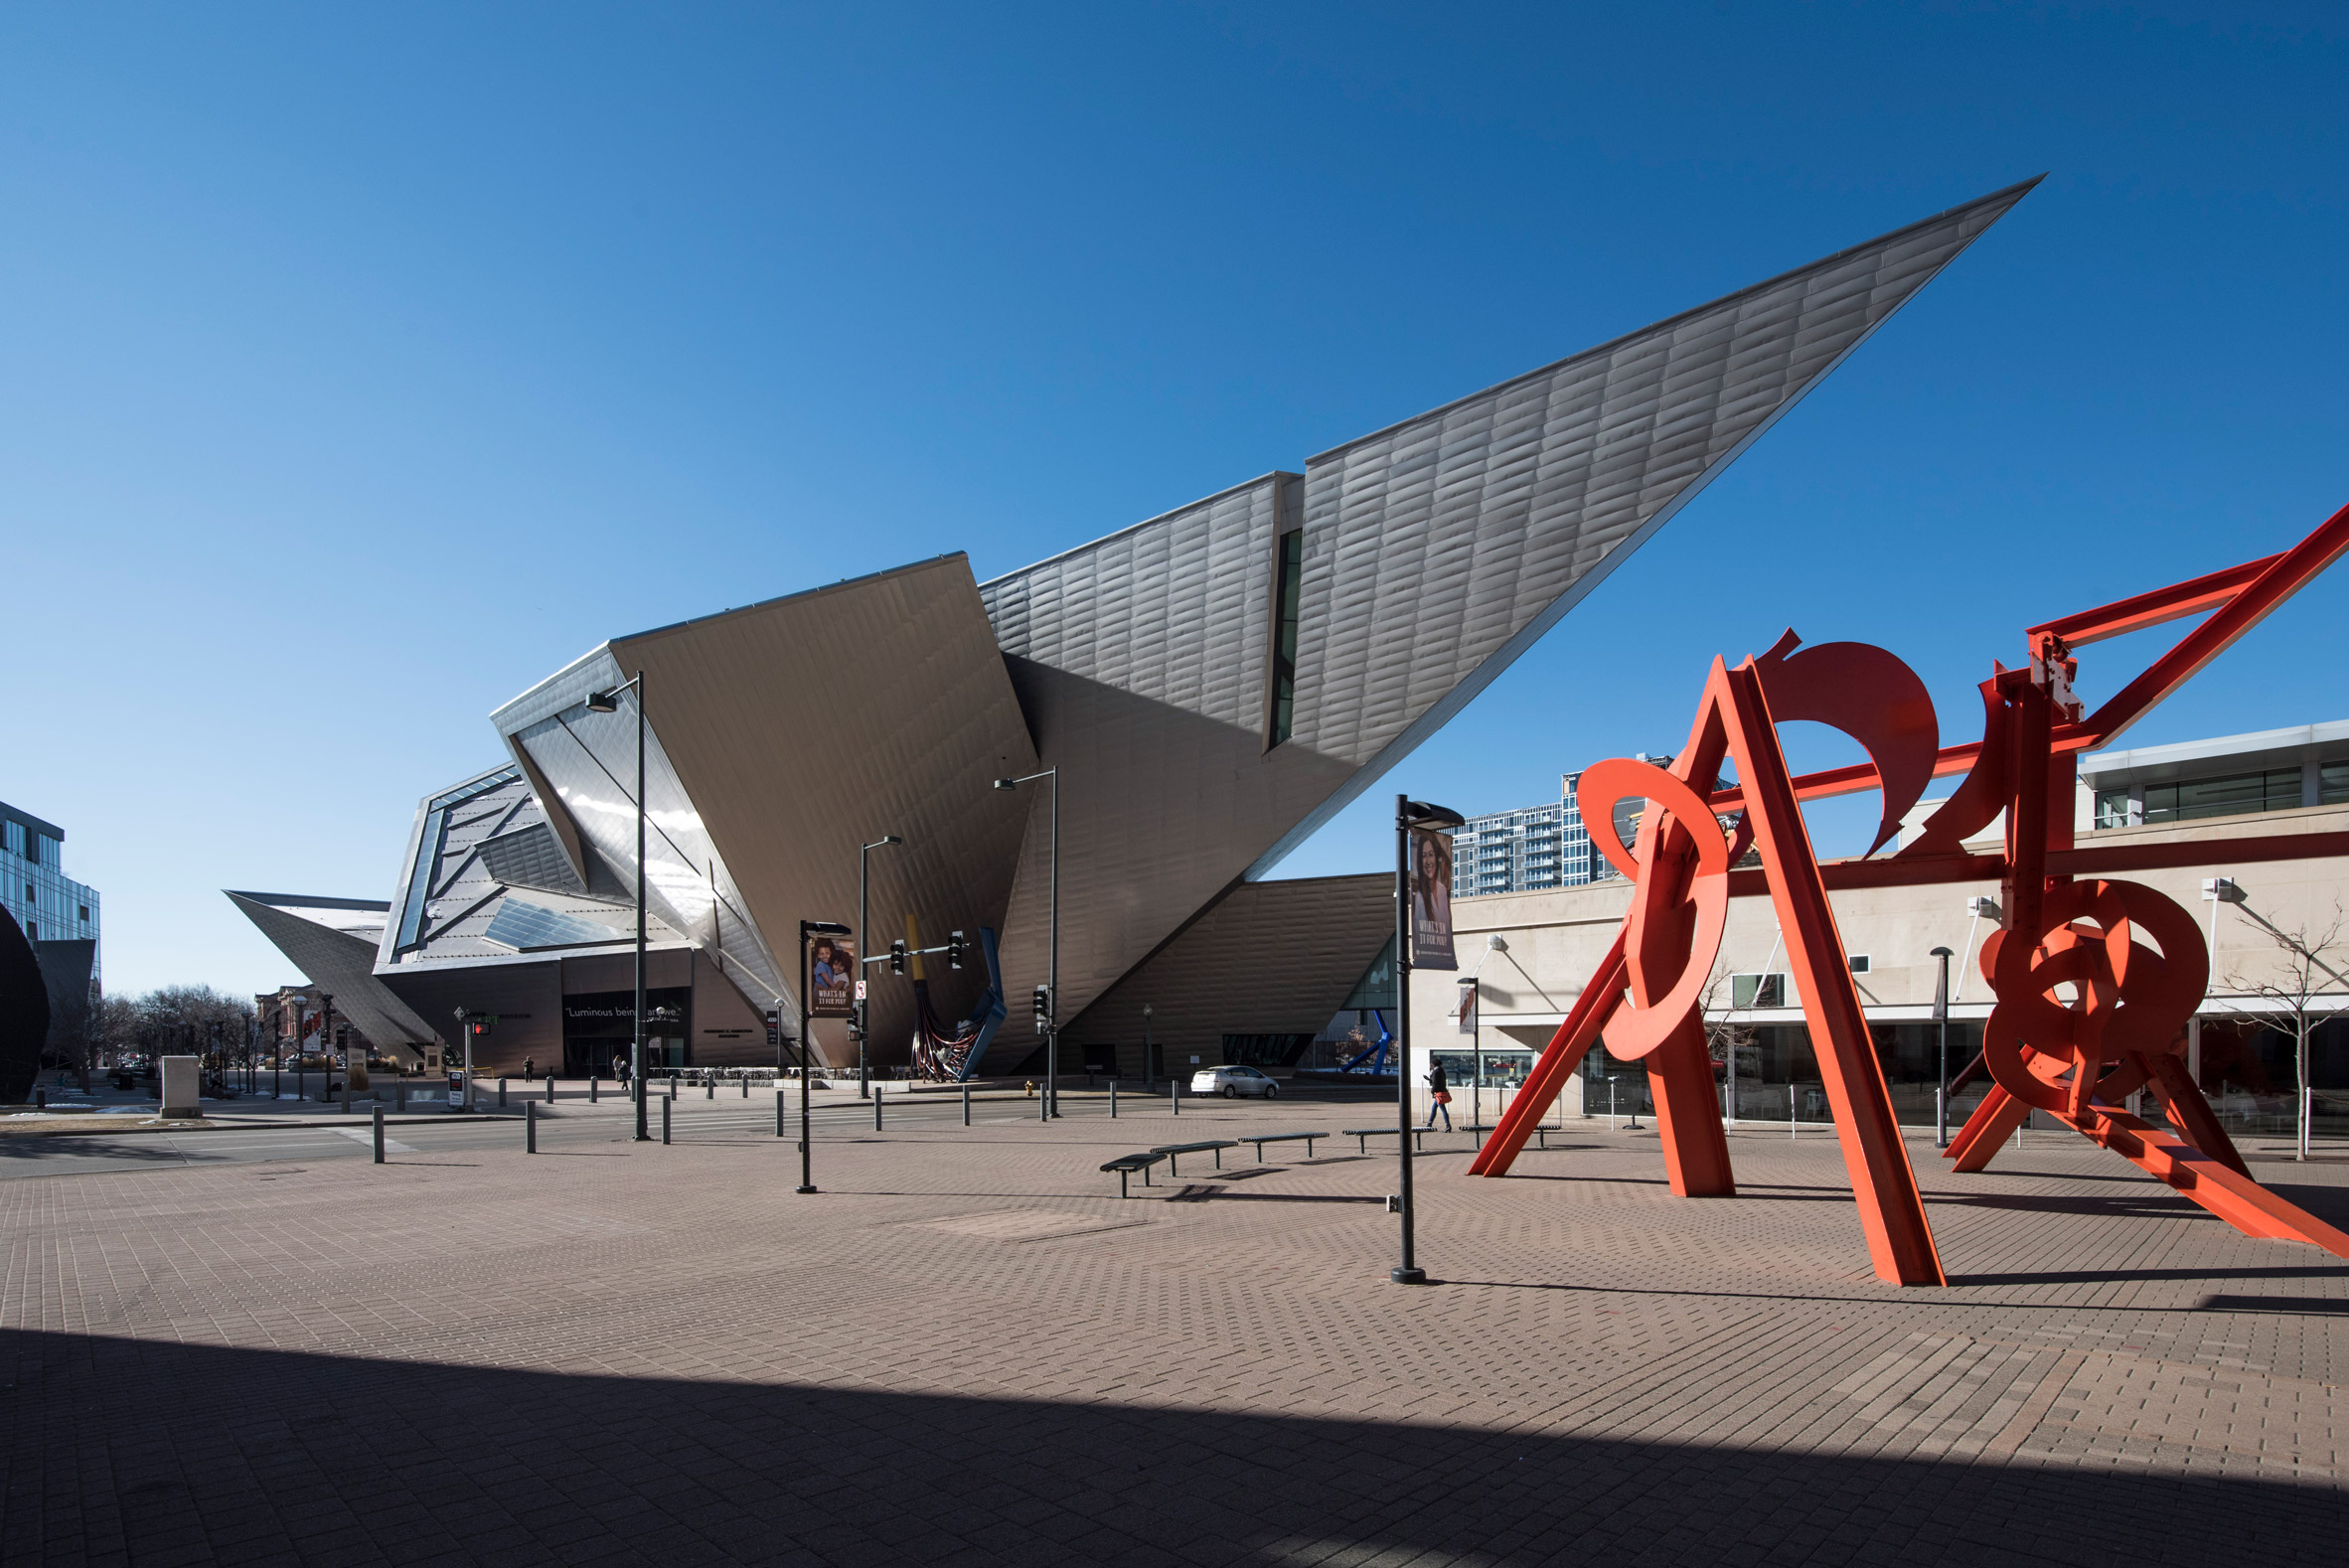 Titanium-clad exterior of Denver Art Museum